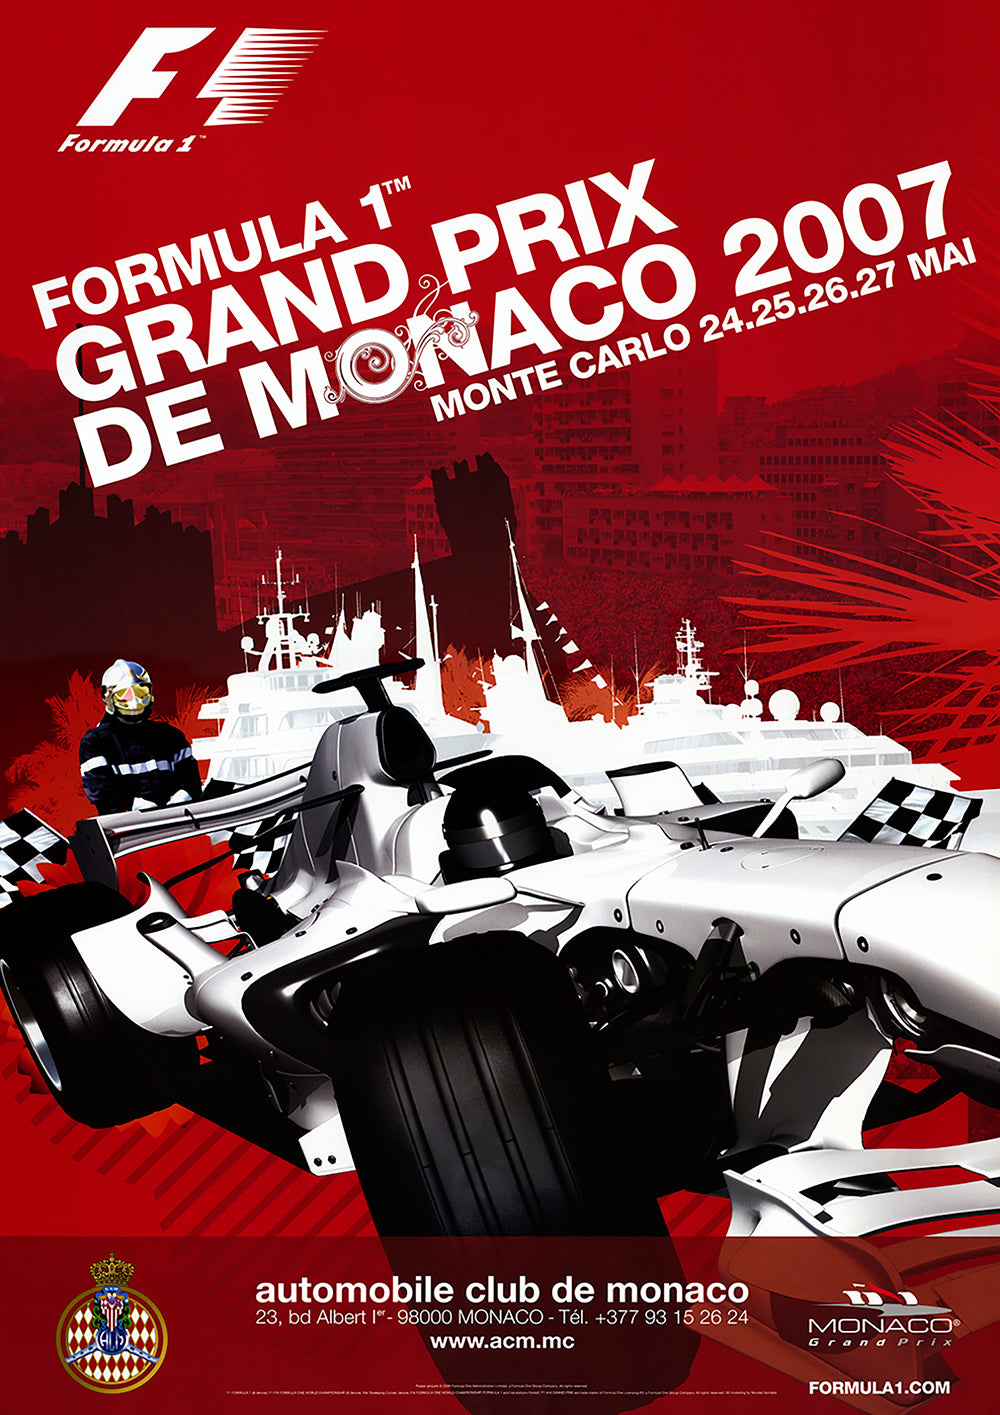 2007 Monaco Grand Prix Posters